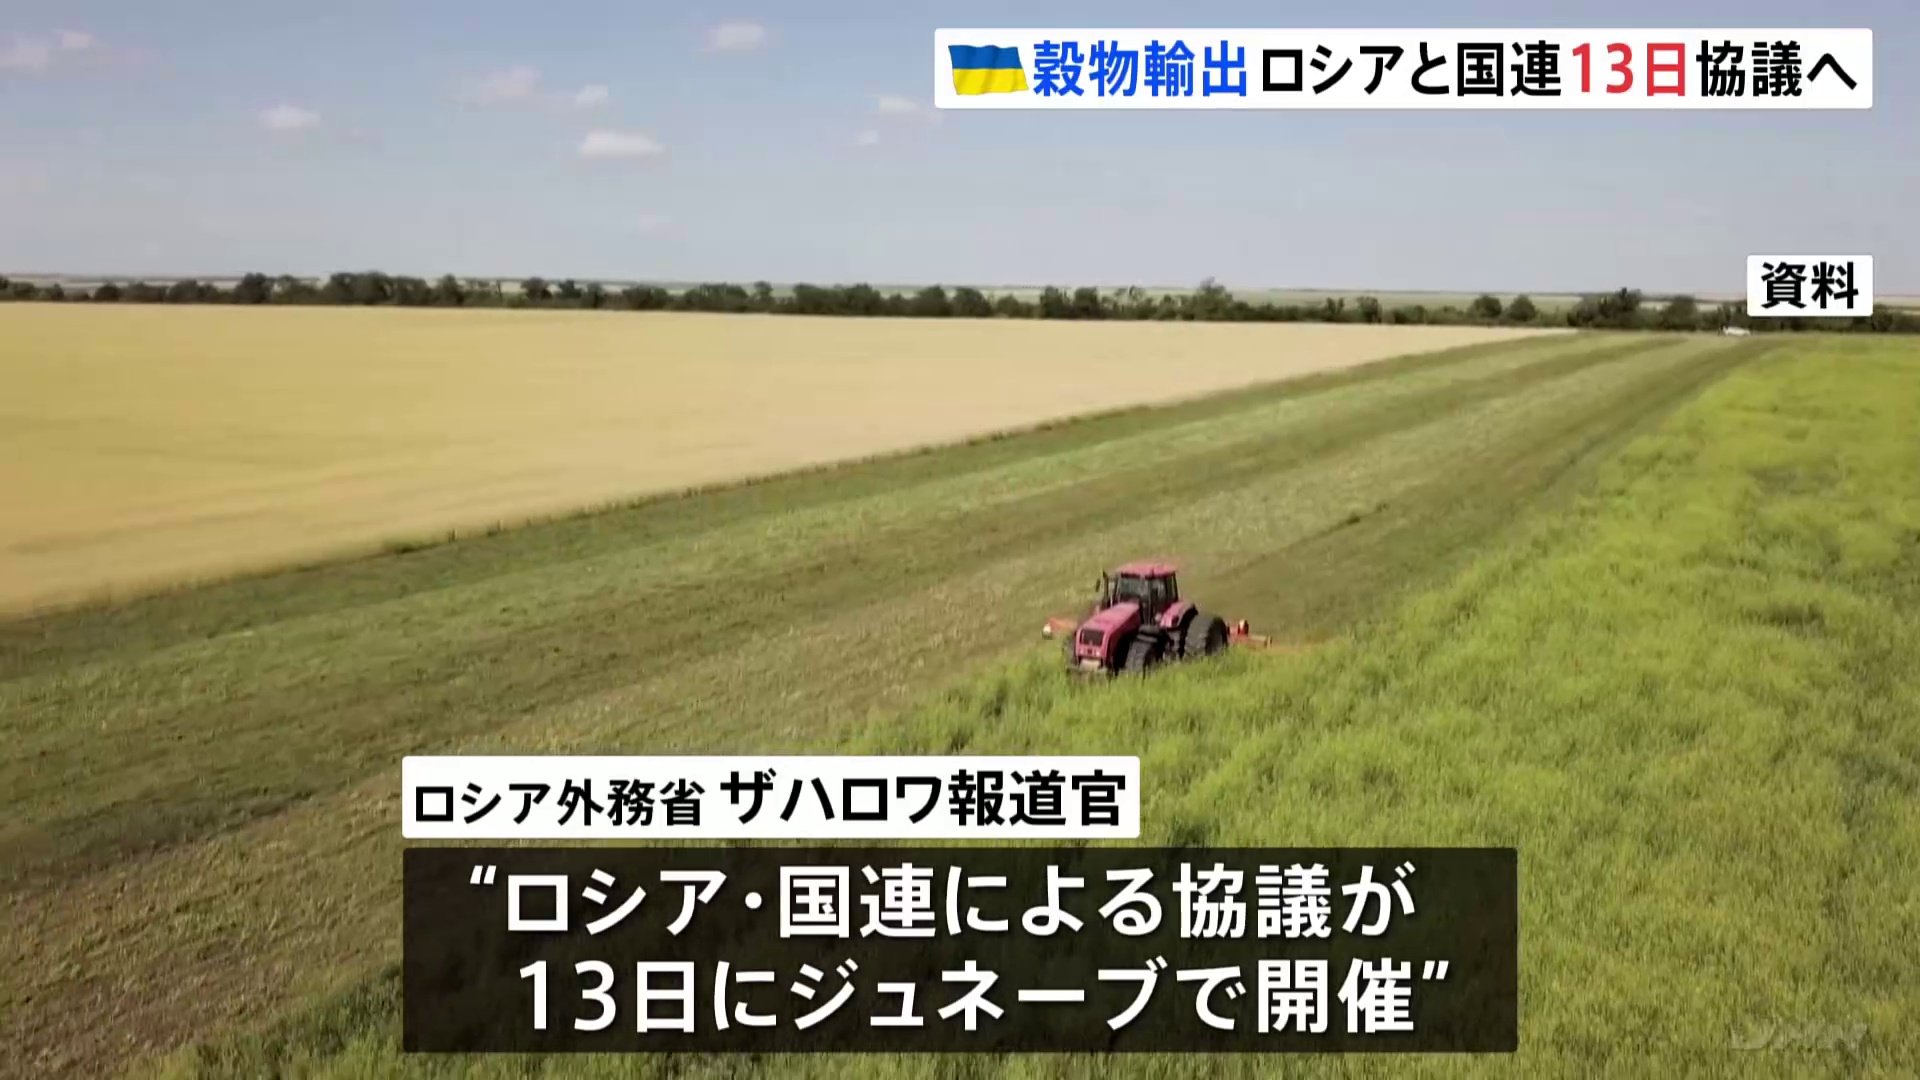 ウクライナ産穀物の輸出めぐりロシアが13日に国連と協議へ